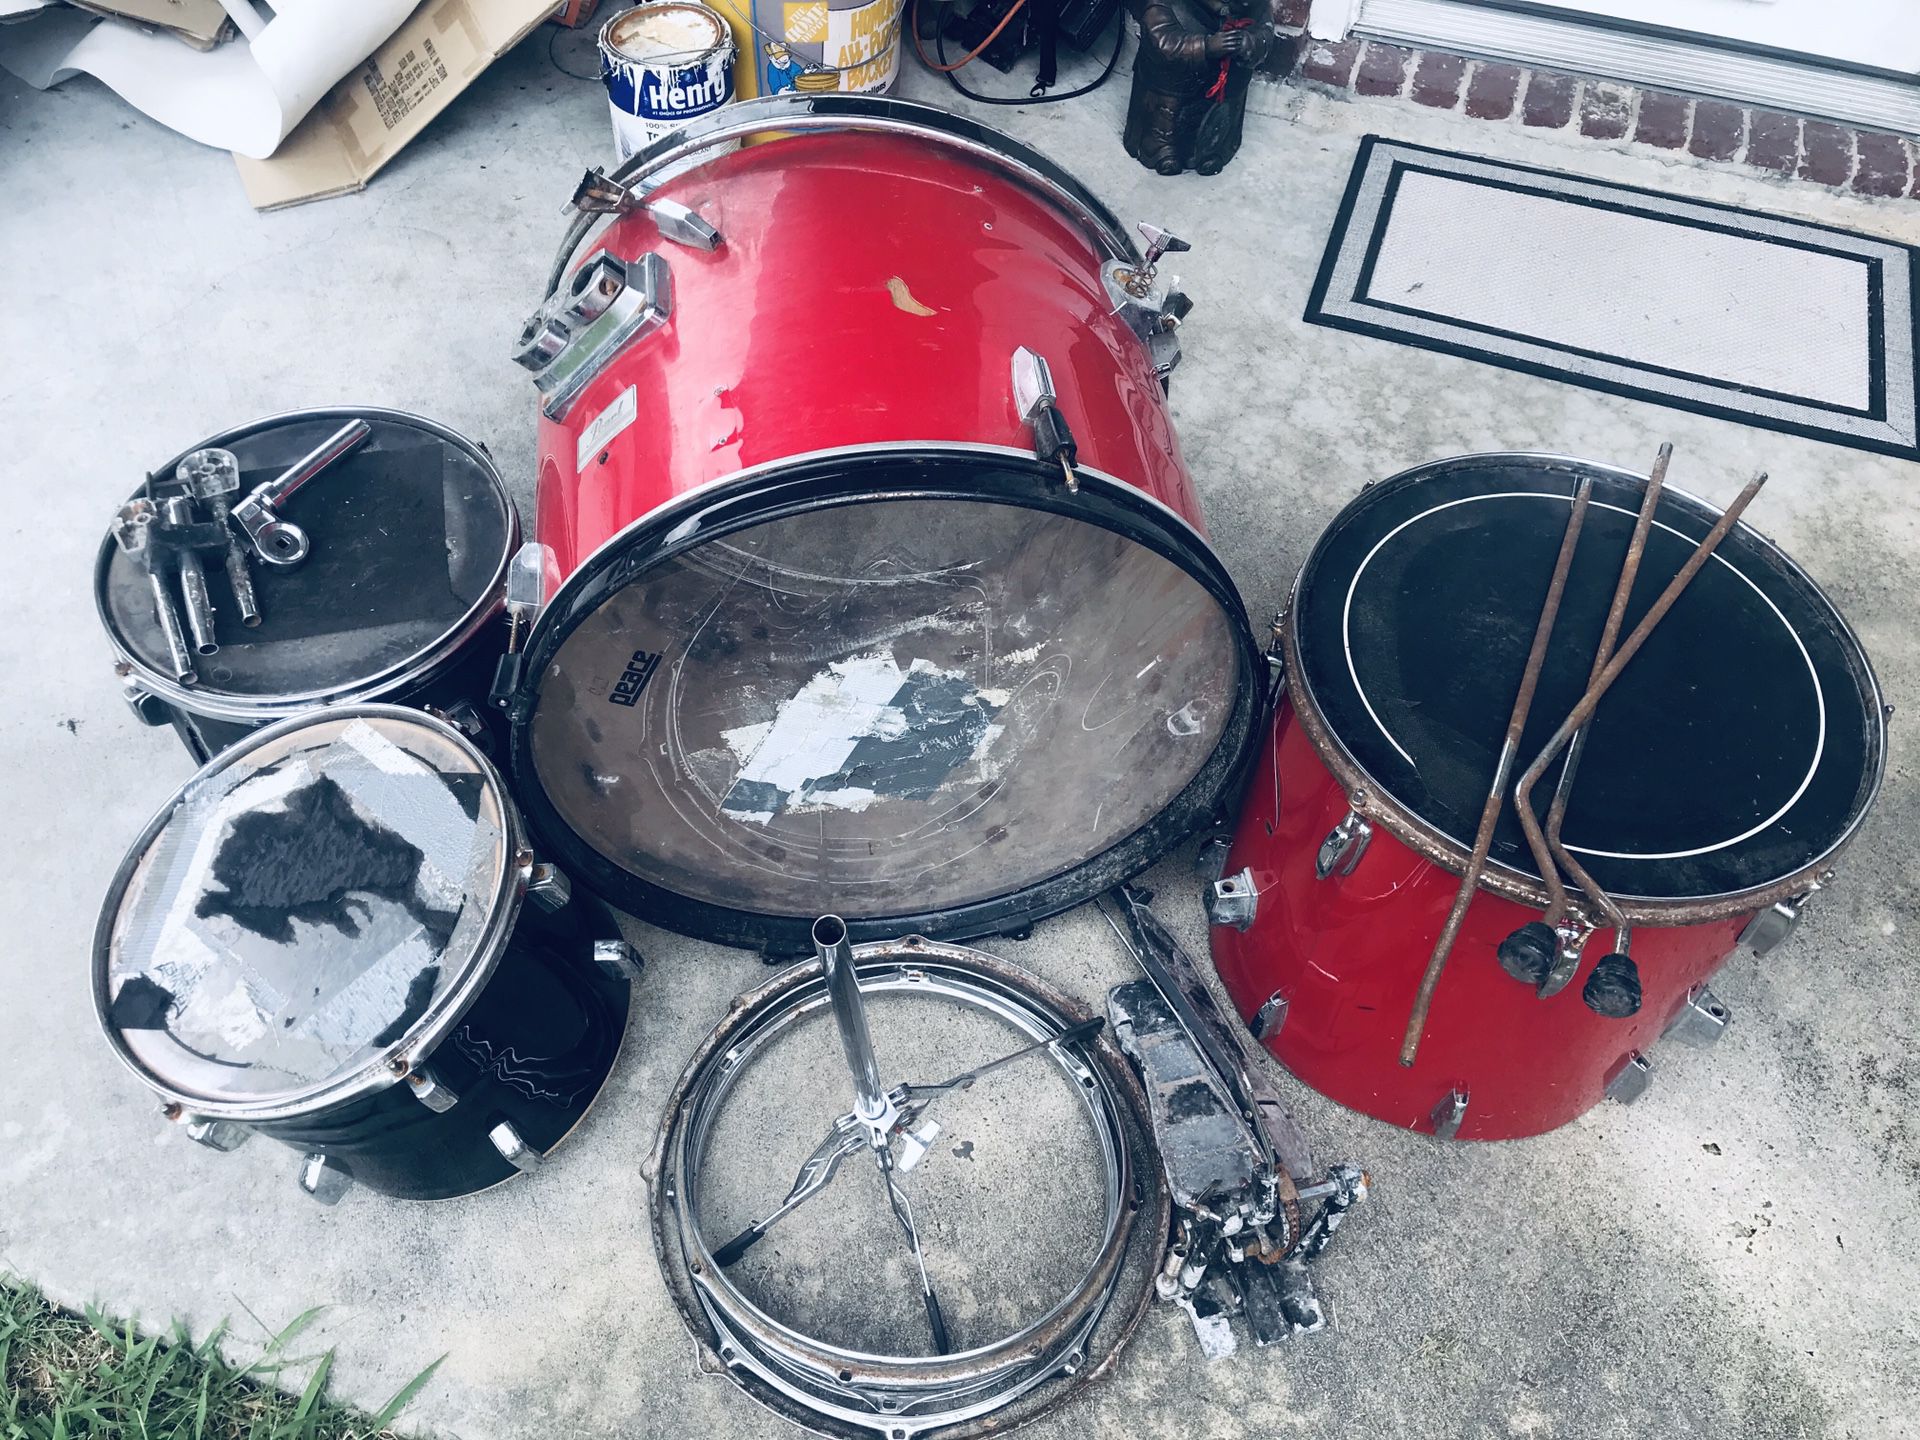 Drum parts